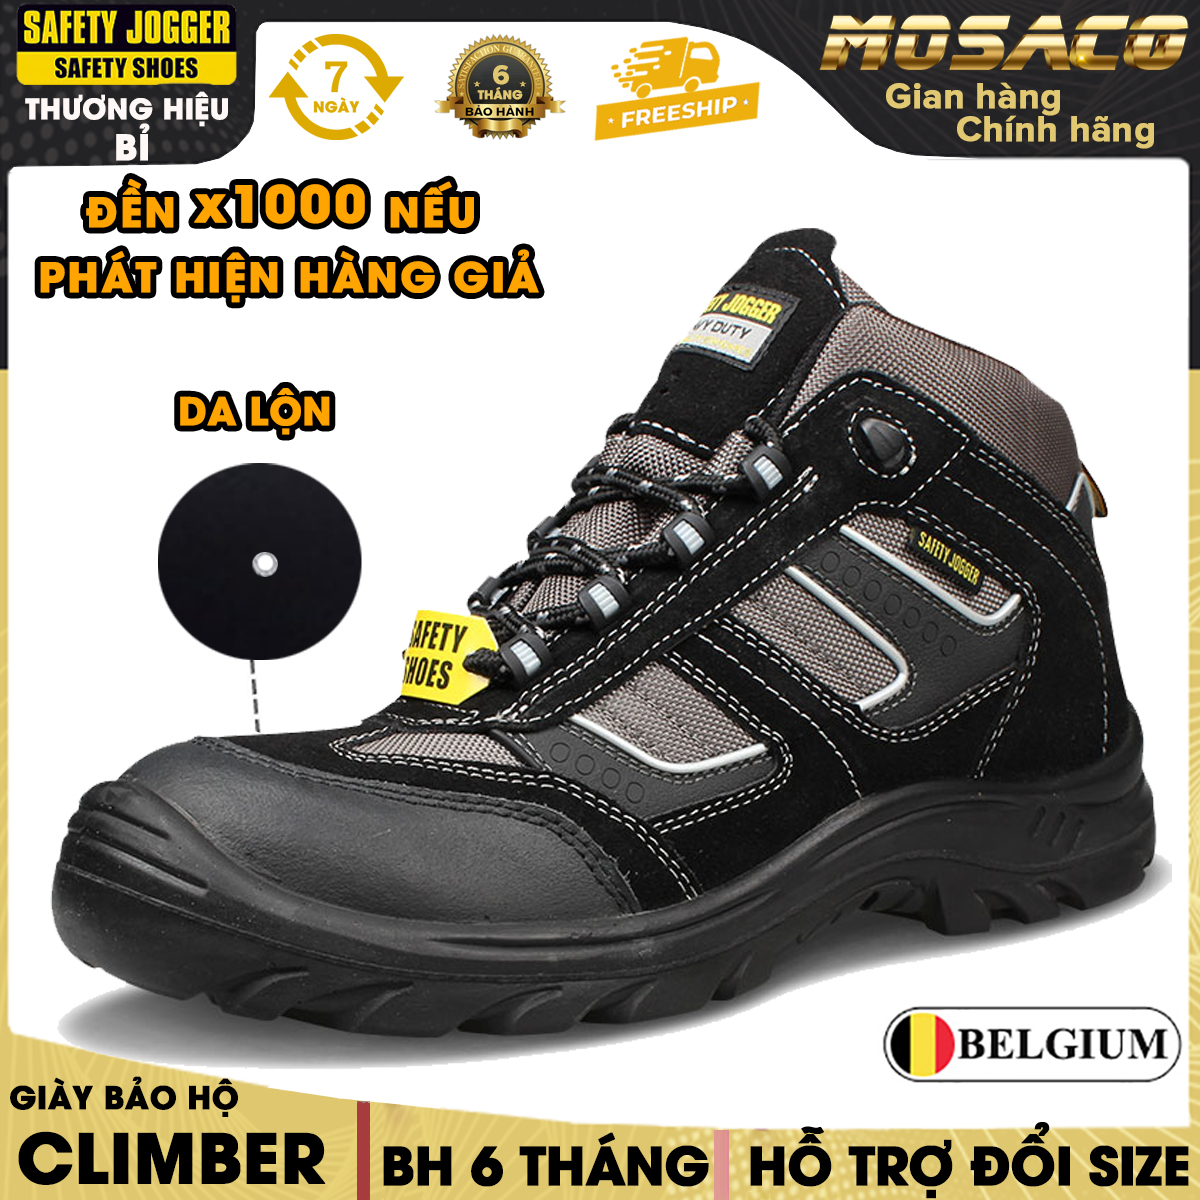 Giày bảo hộ Jogger Climber S3 SRC chính hãng cao cổ đạt tiêu chuẩn S3.